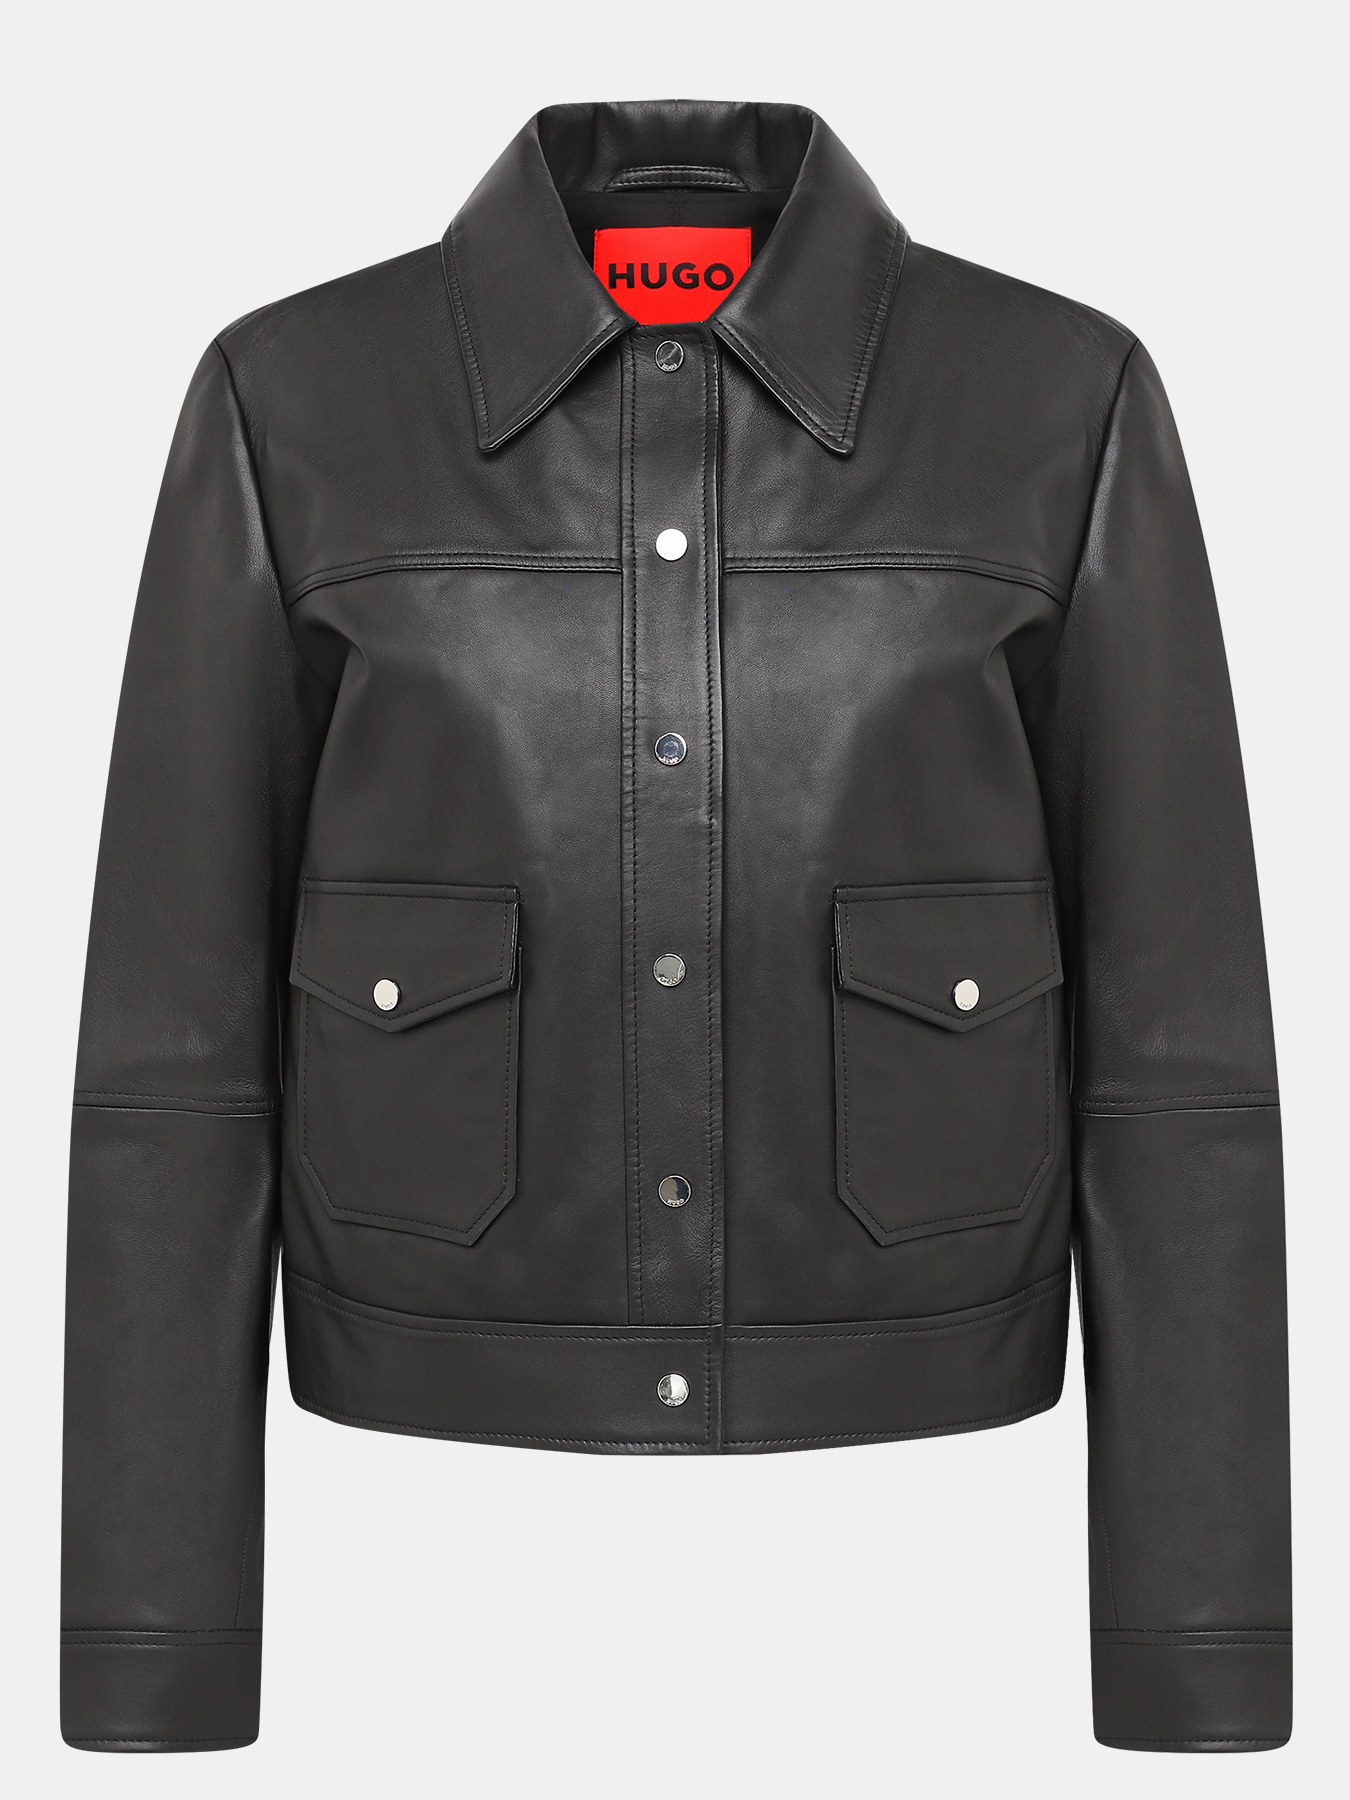 Кожаная куртка Lavelli HUGO 426669-043, цвет черный, размер 44-46